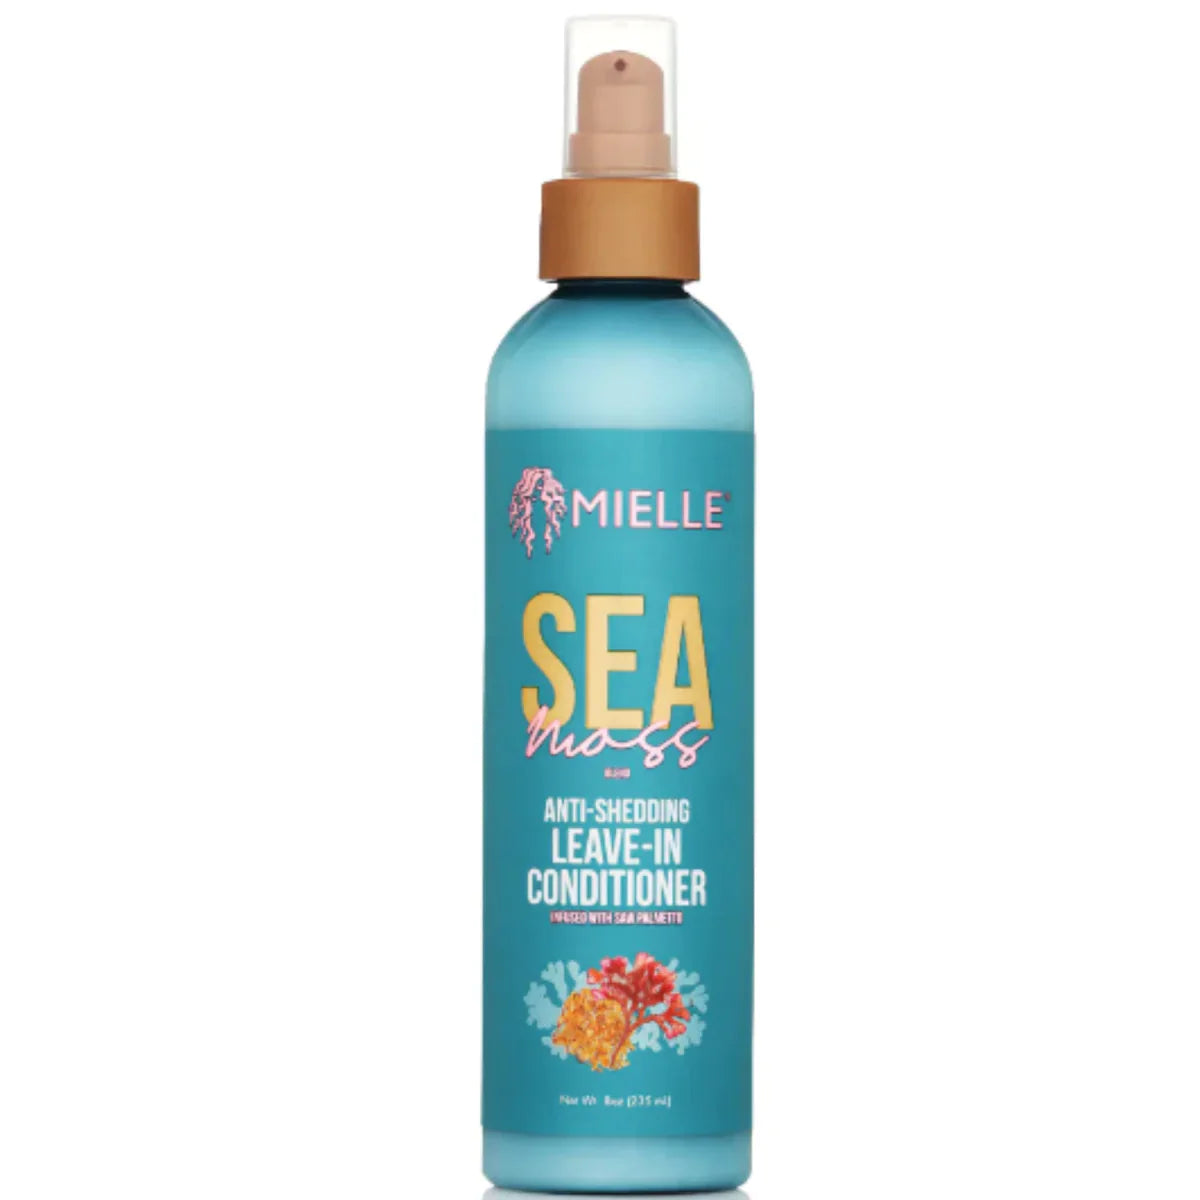 Mielle Organics Sea Moss Anti Shedding Leave In Conditioner - 8oz